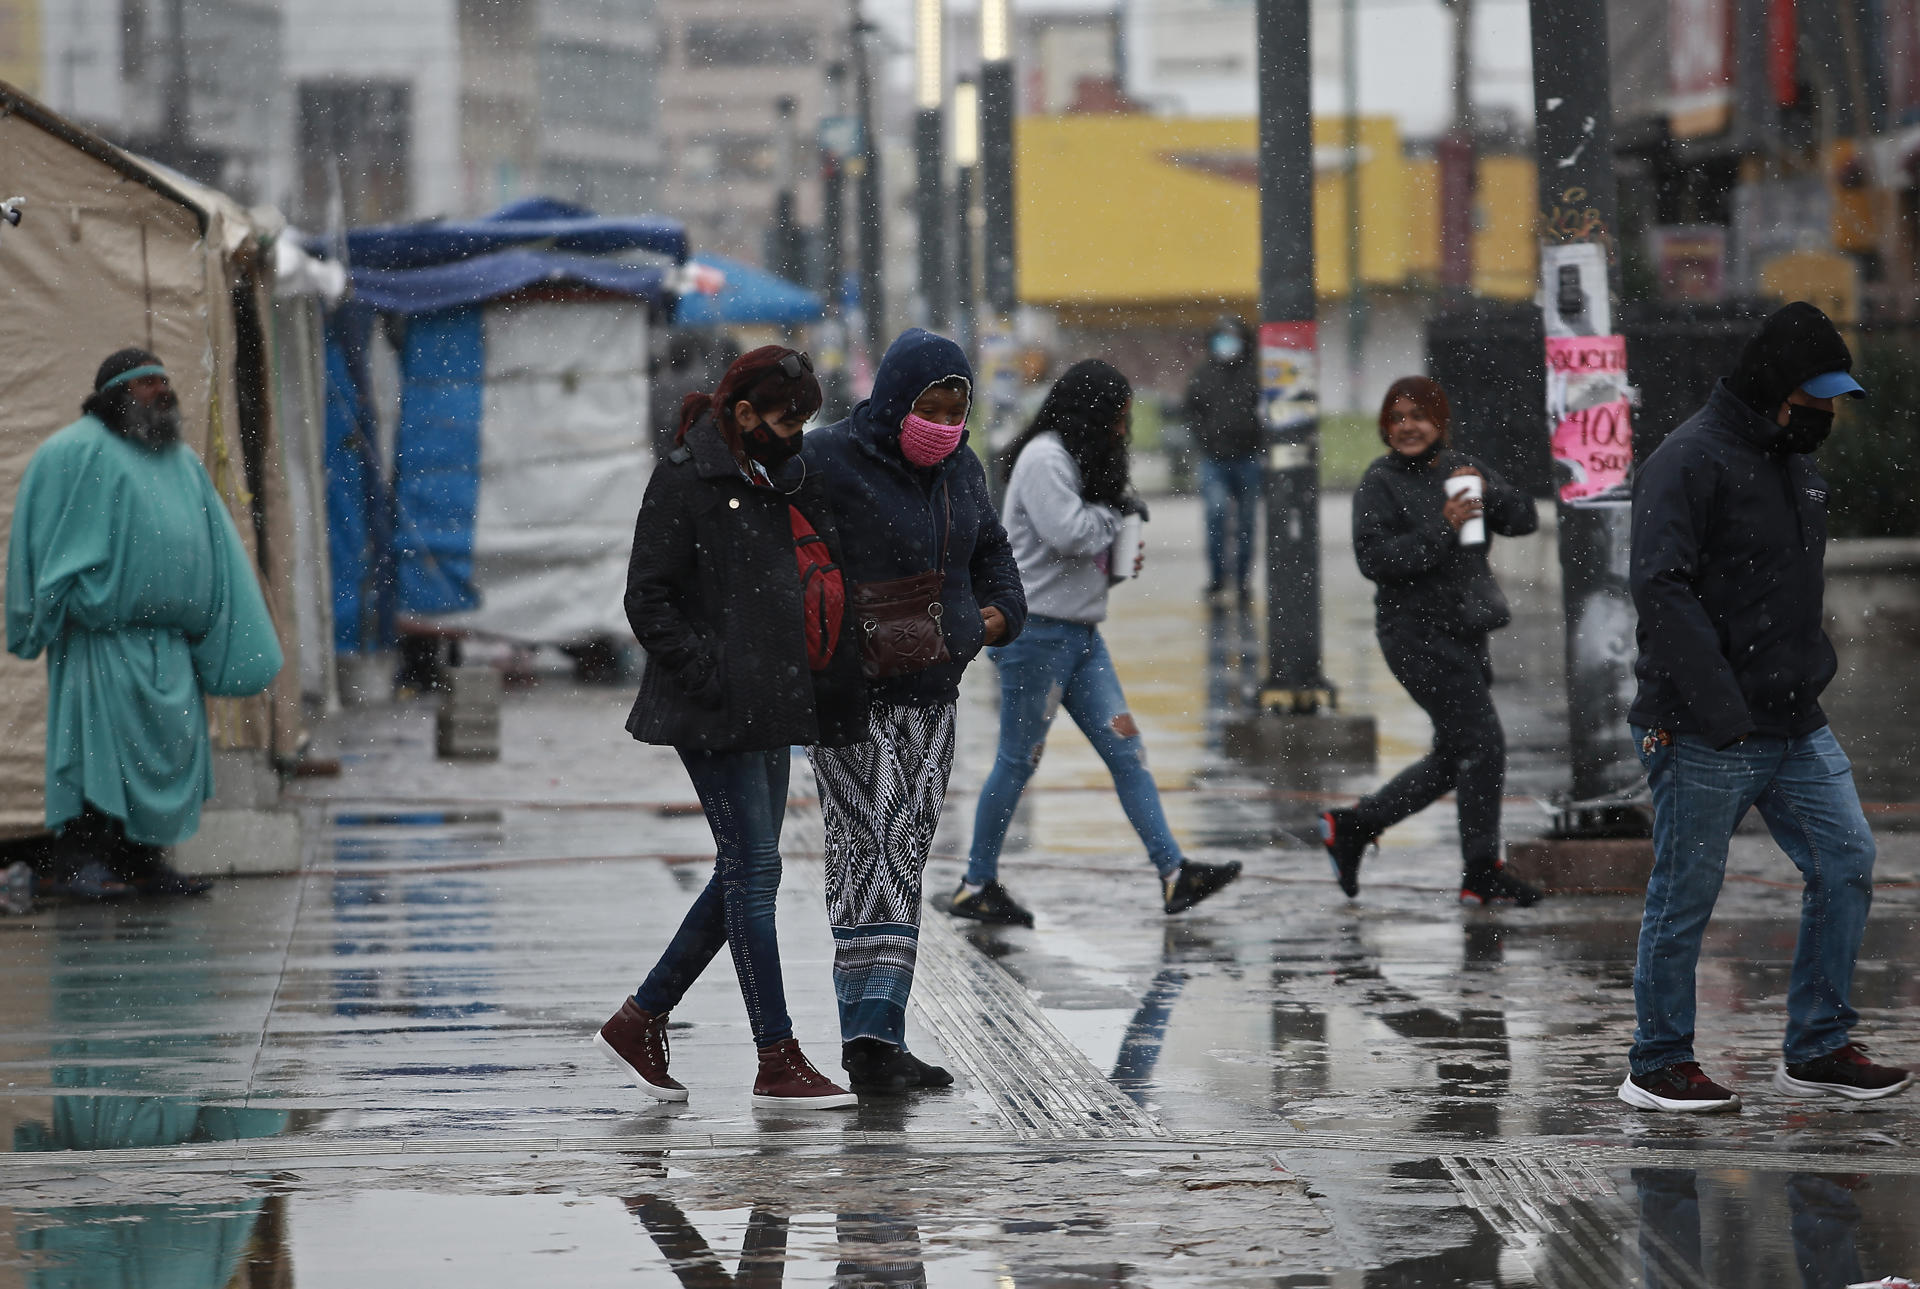 Personas caminan durante la caída de nieve y agua nieve en Ciudad Juárez, en el estado de Chihuahua (México). Imagen de archivo. EFE/Luis Torres